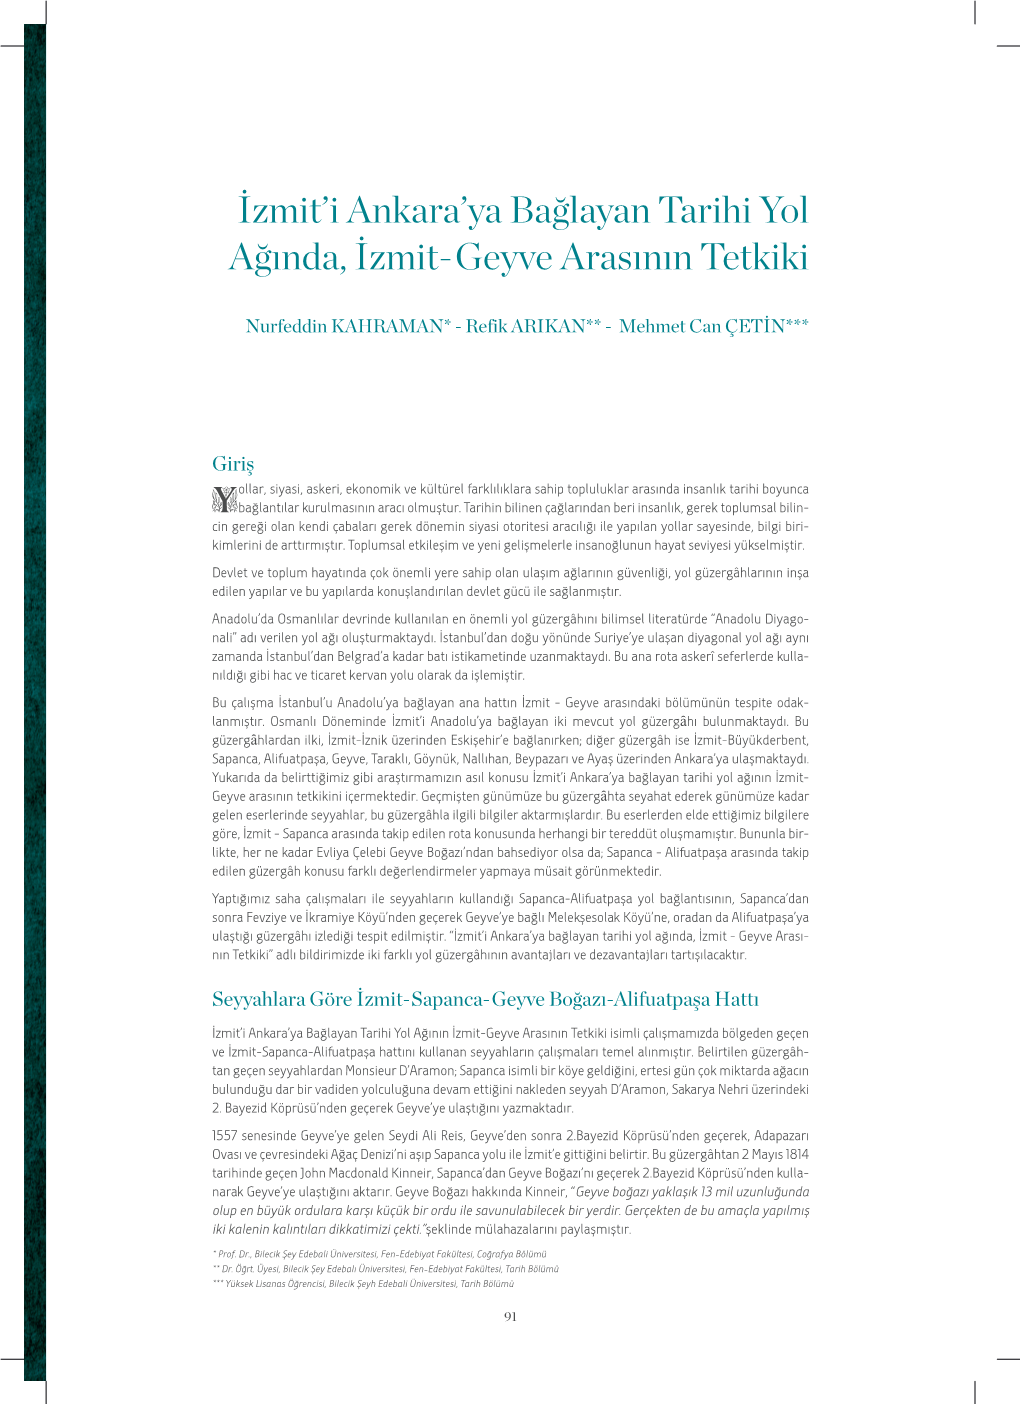 İzmit'i Ankara'ya Bağlayan Tarihi Yol Ağında, İzmit-Geyve Arasının Tetkiki